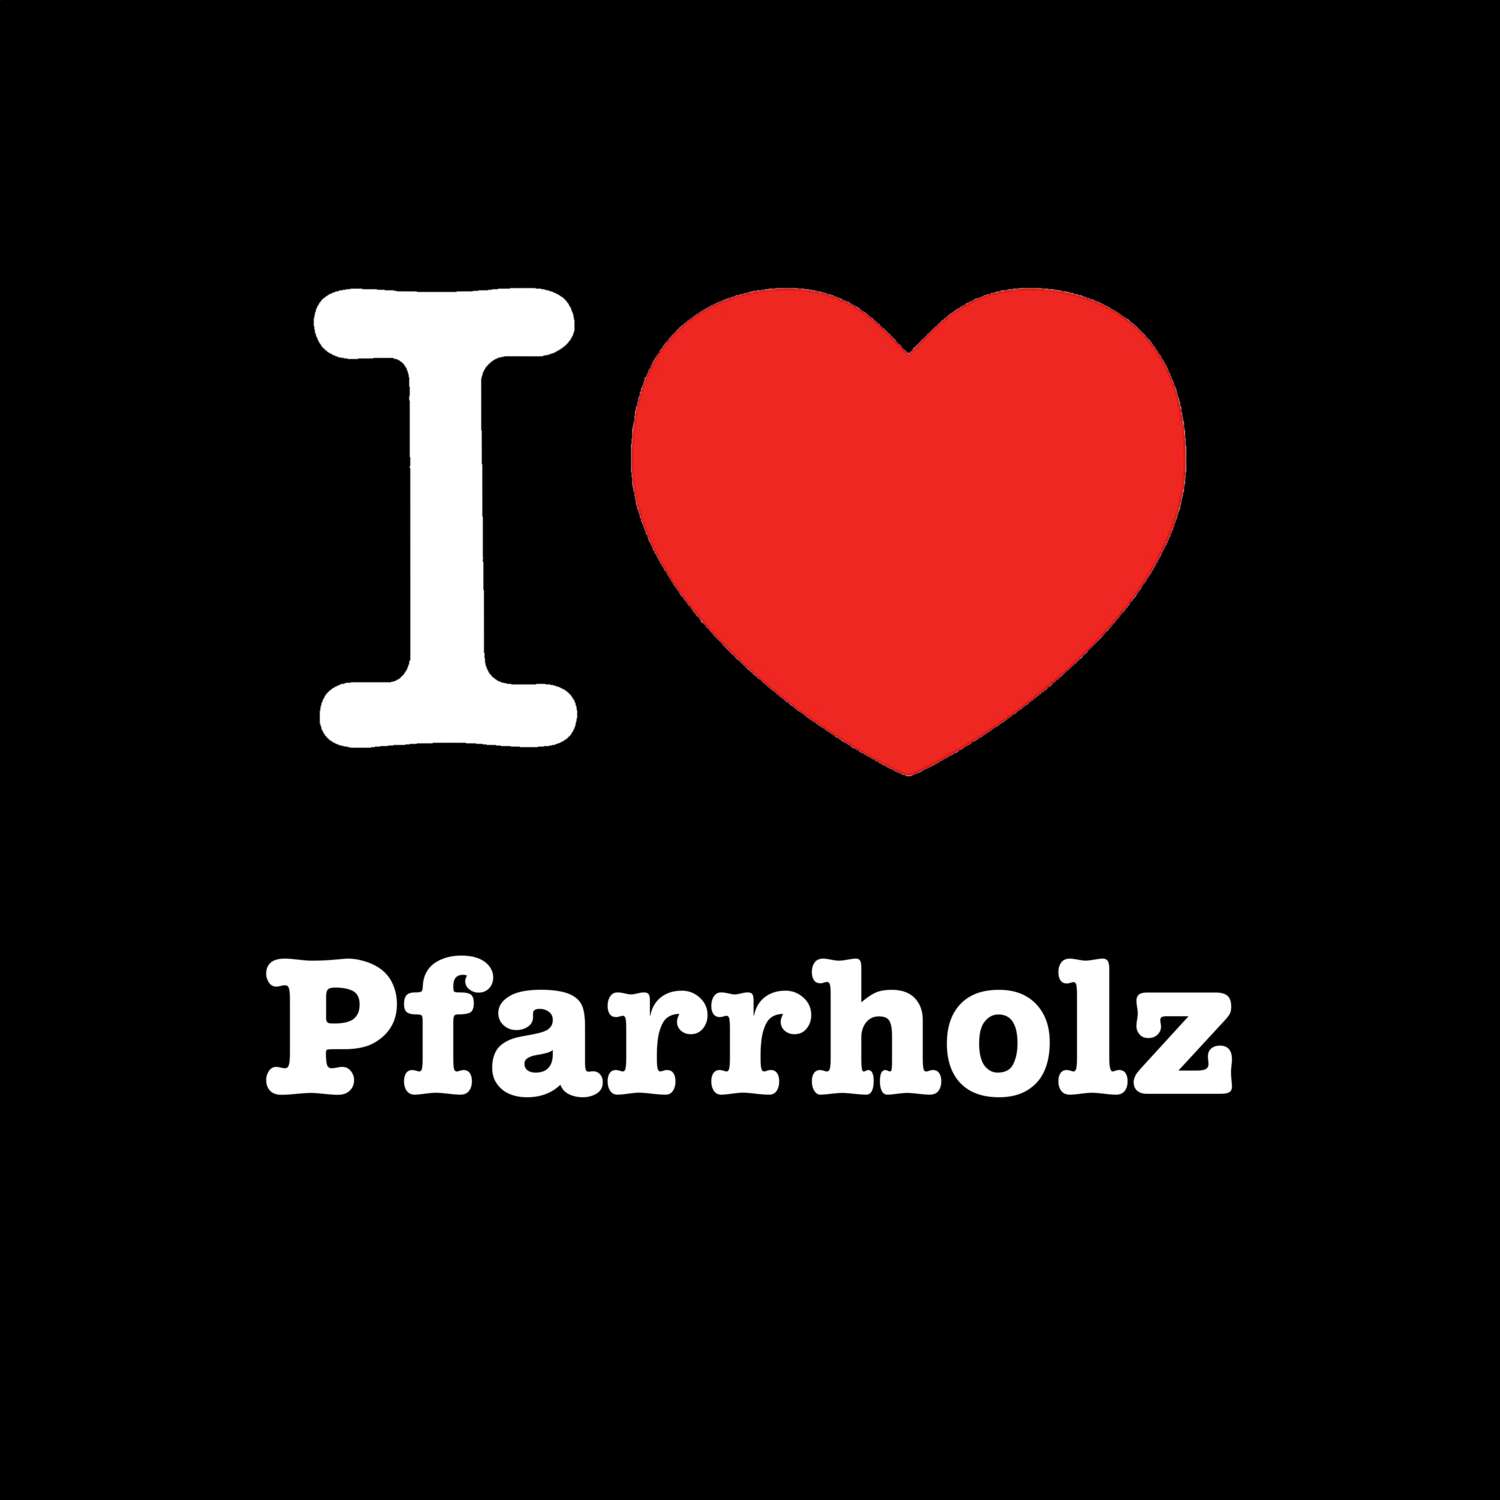 Pfarrholz T-Shirt »I love«